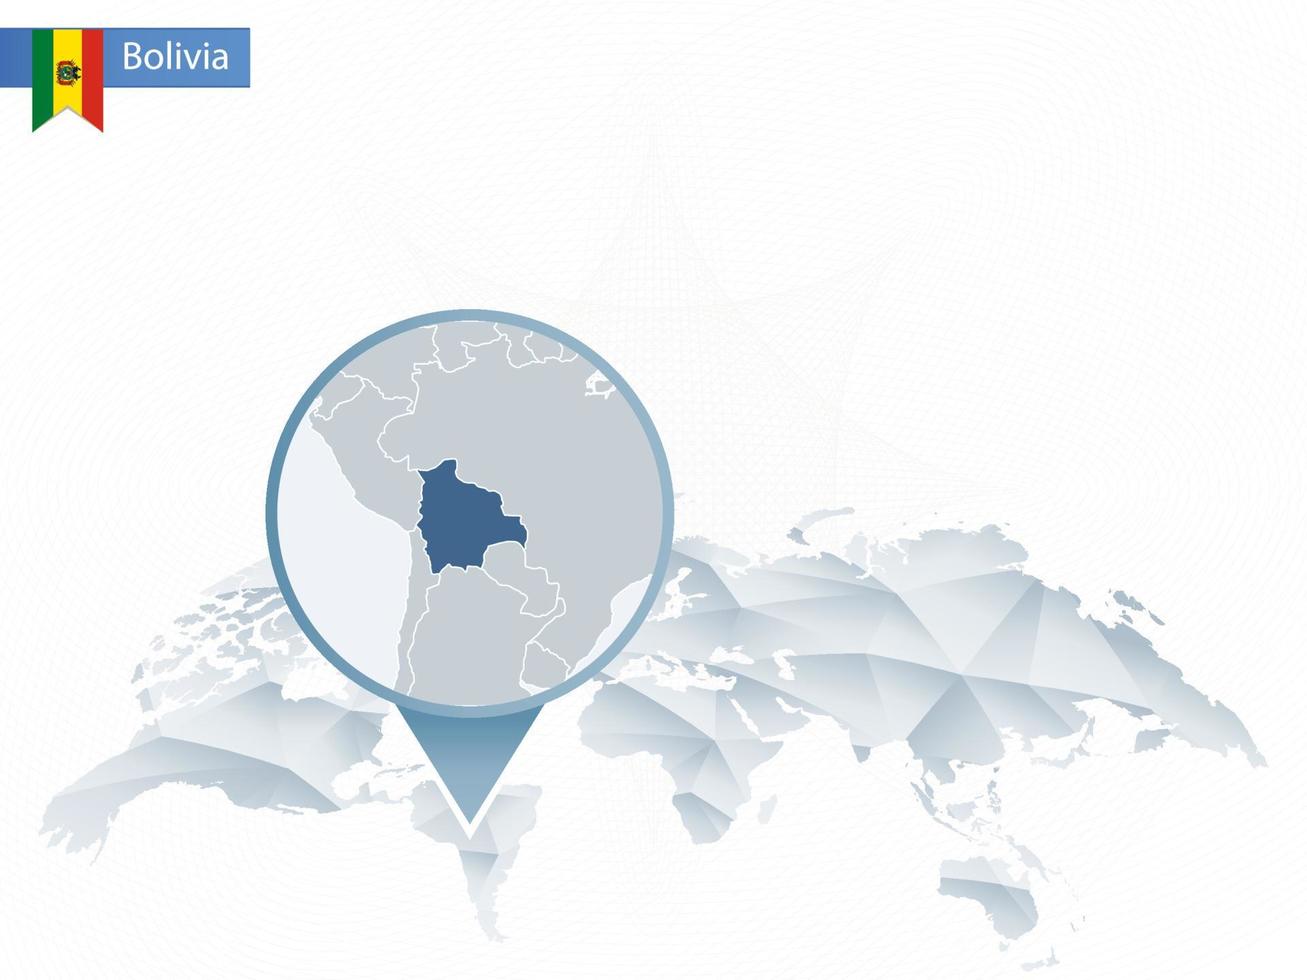 mappa del mondo arrotondata astratta con mappa dettagliata della bolivia appuntata. vettore